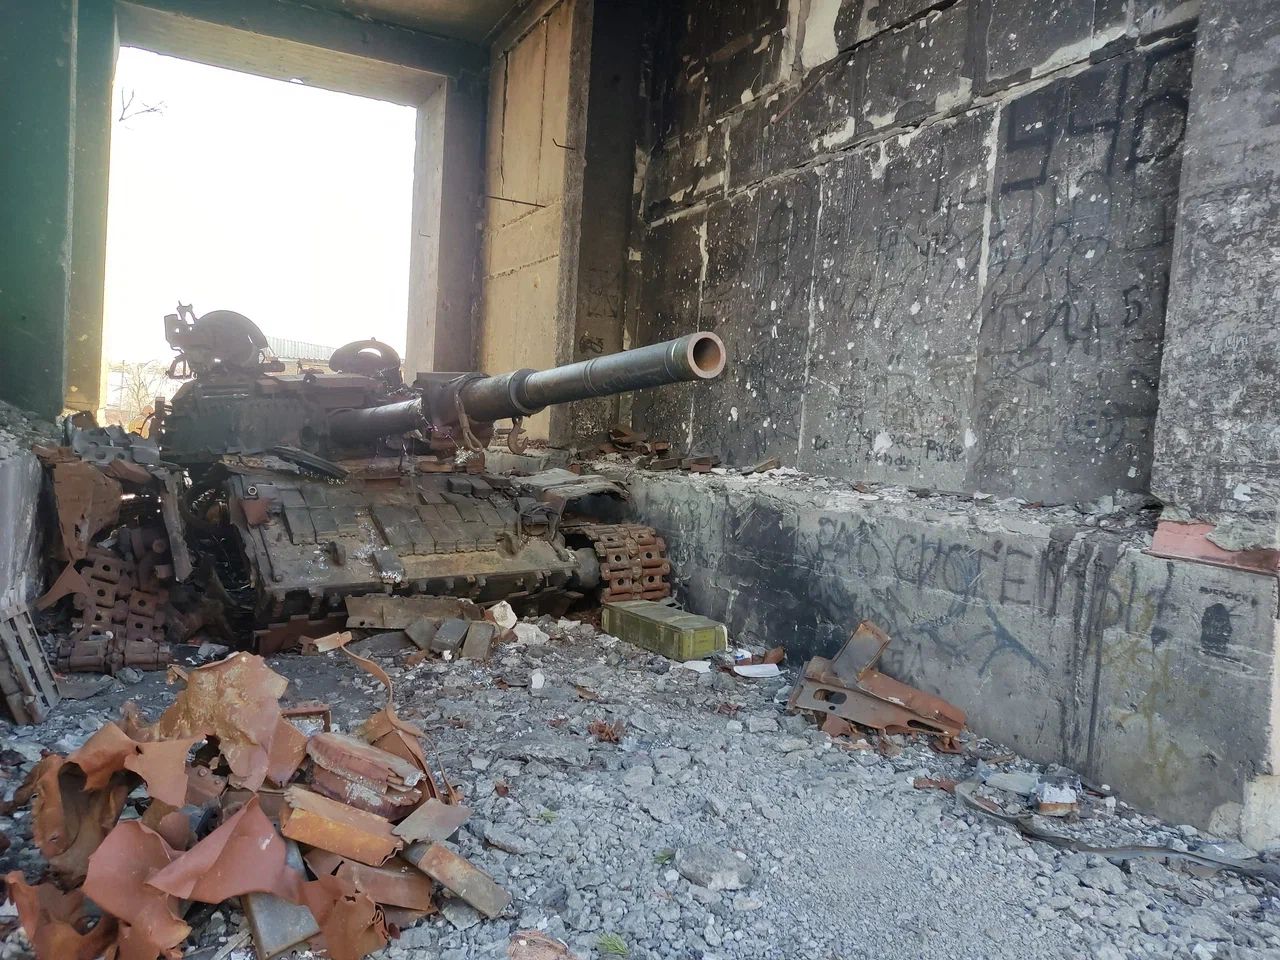 Карма не заставила себя ждать — снаряд прилетел прямо в украинский танк, прятавшийся в арке